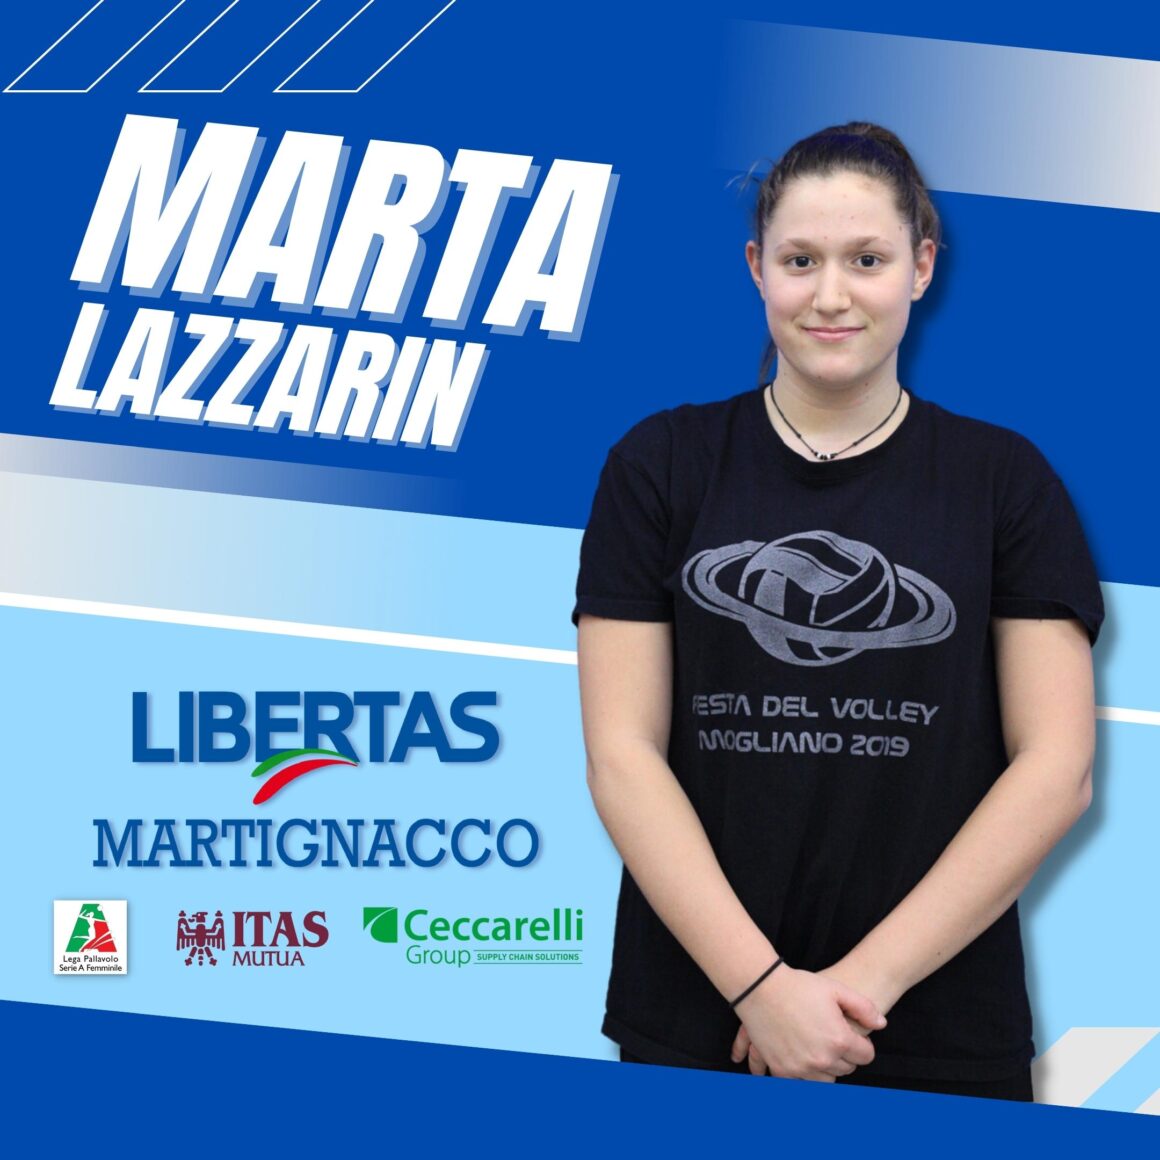 La Itas Ceccarelli Group annuncia Marta Lazzarin